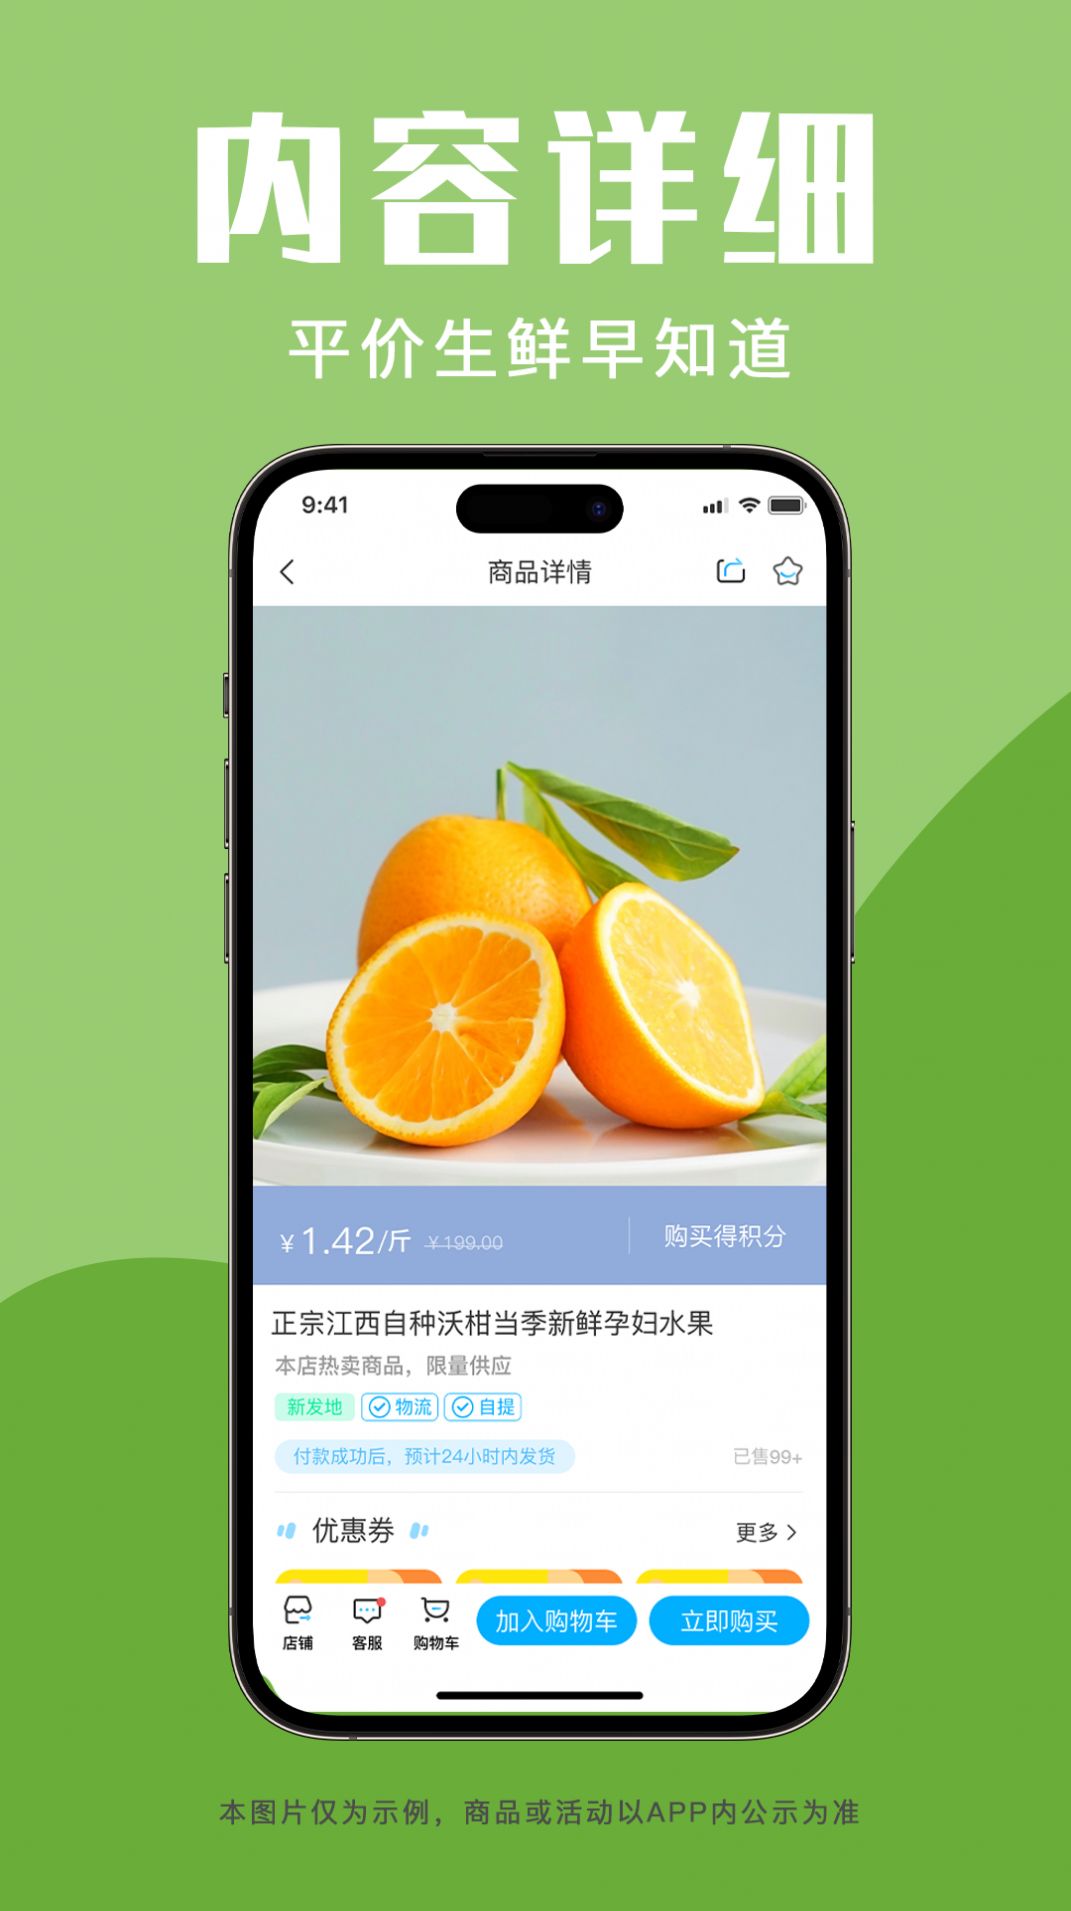 青海新发地商城app图1